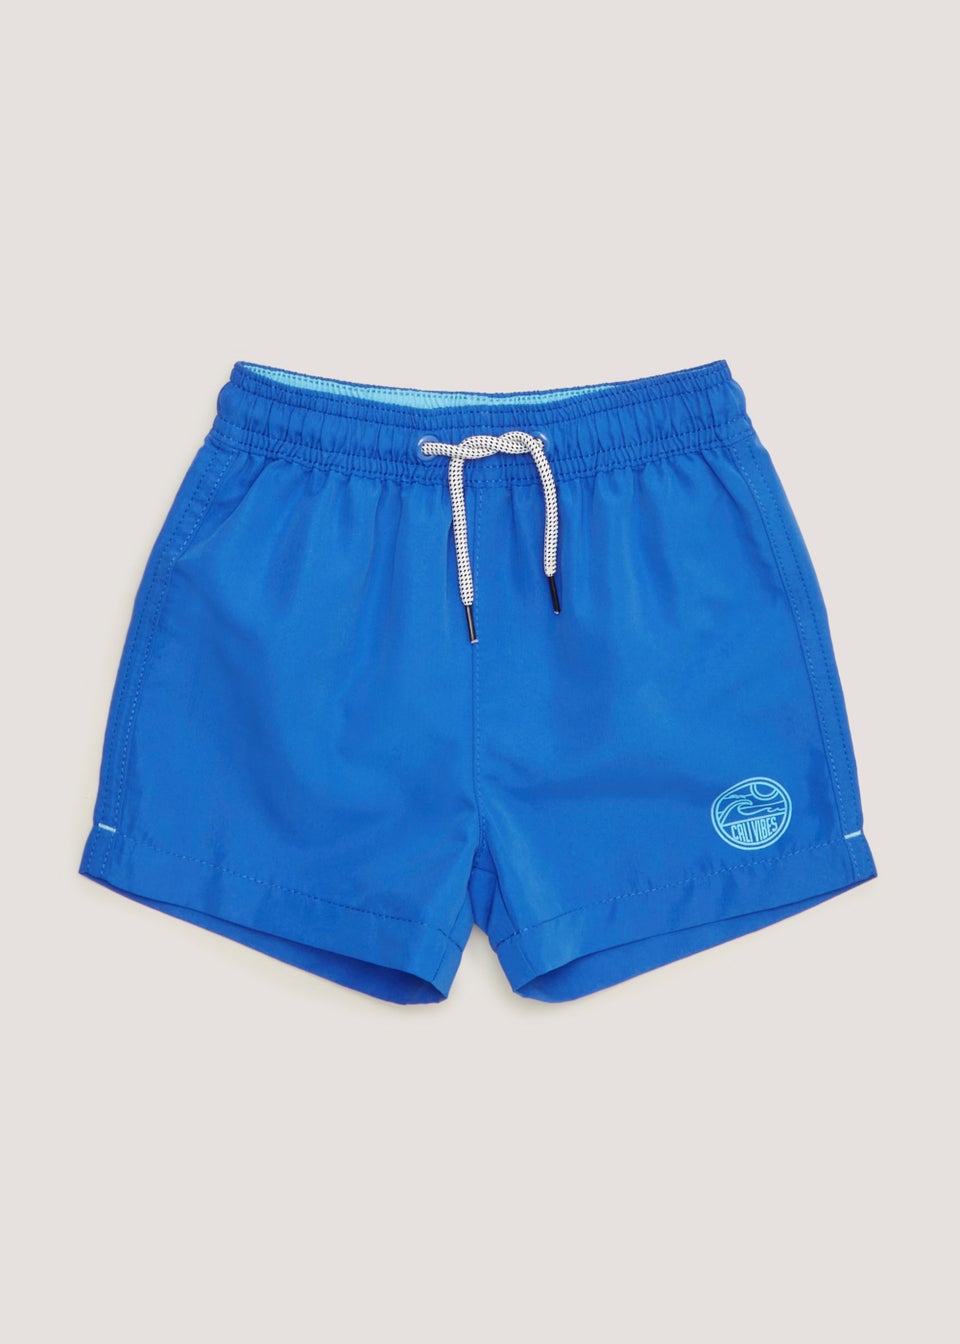 Boys Blue Swim Shorts (9mths-3yrs)